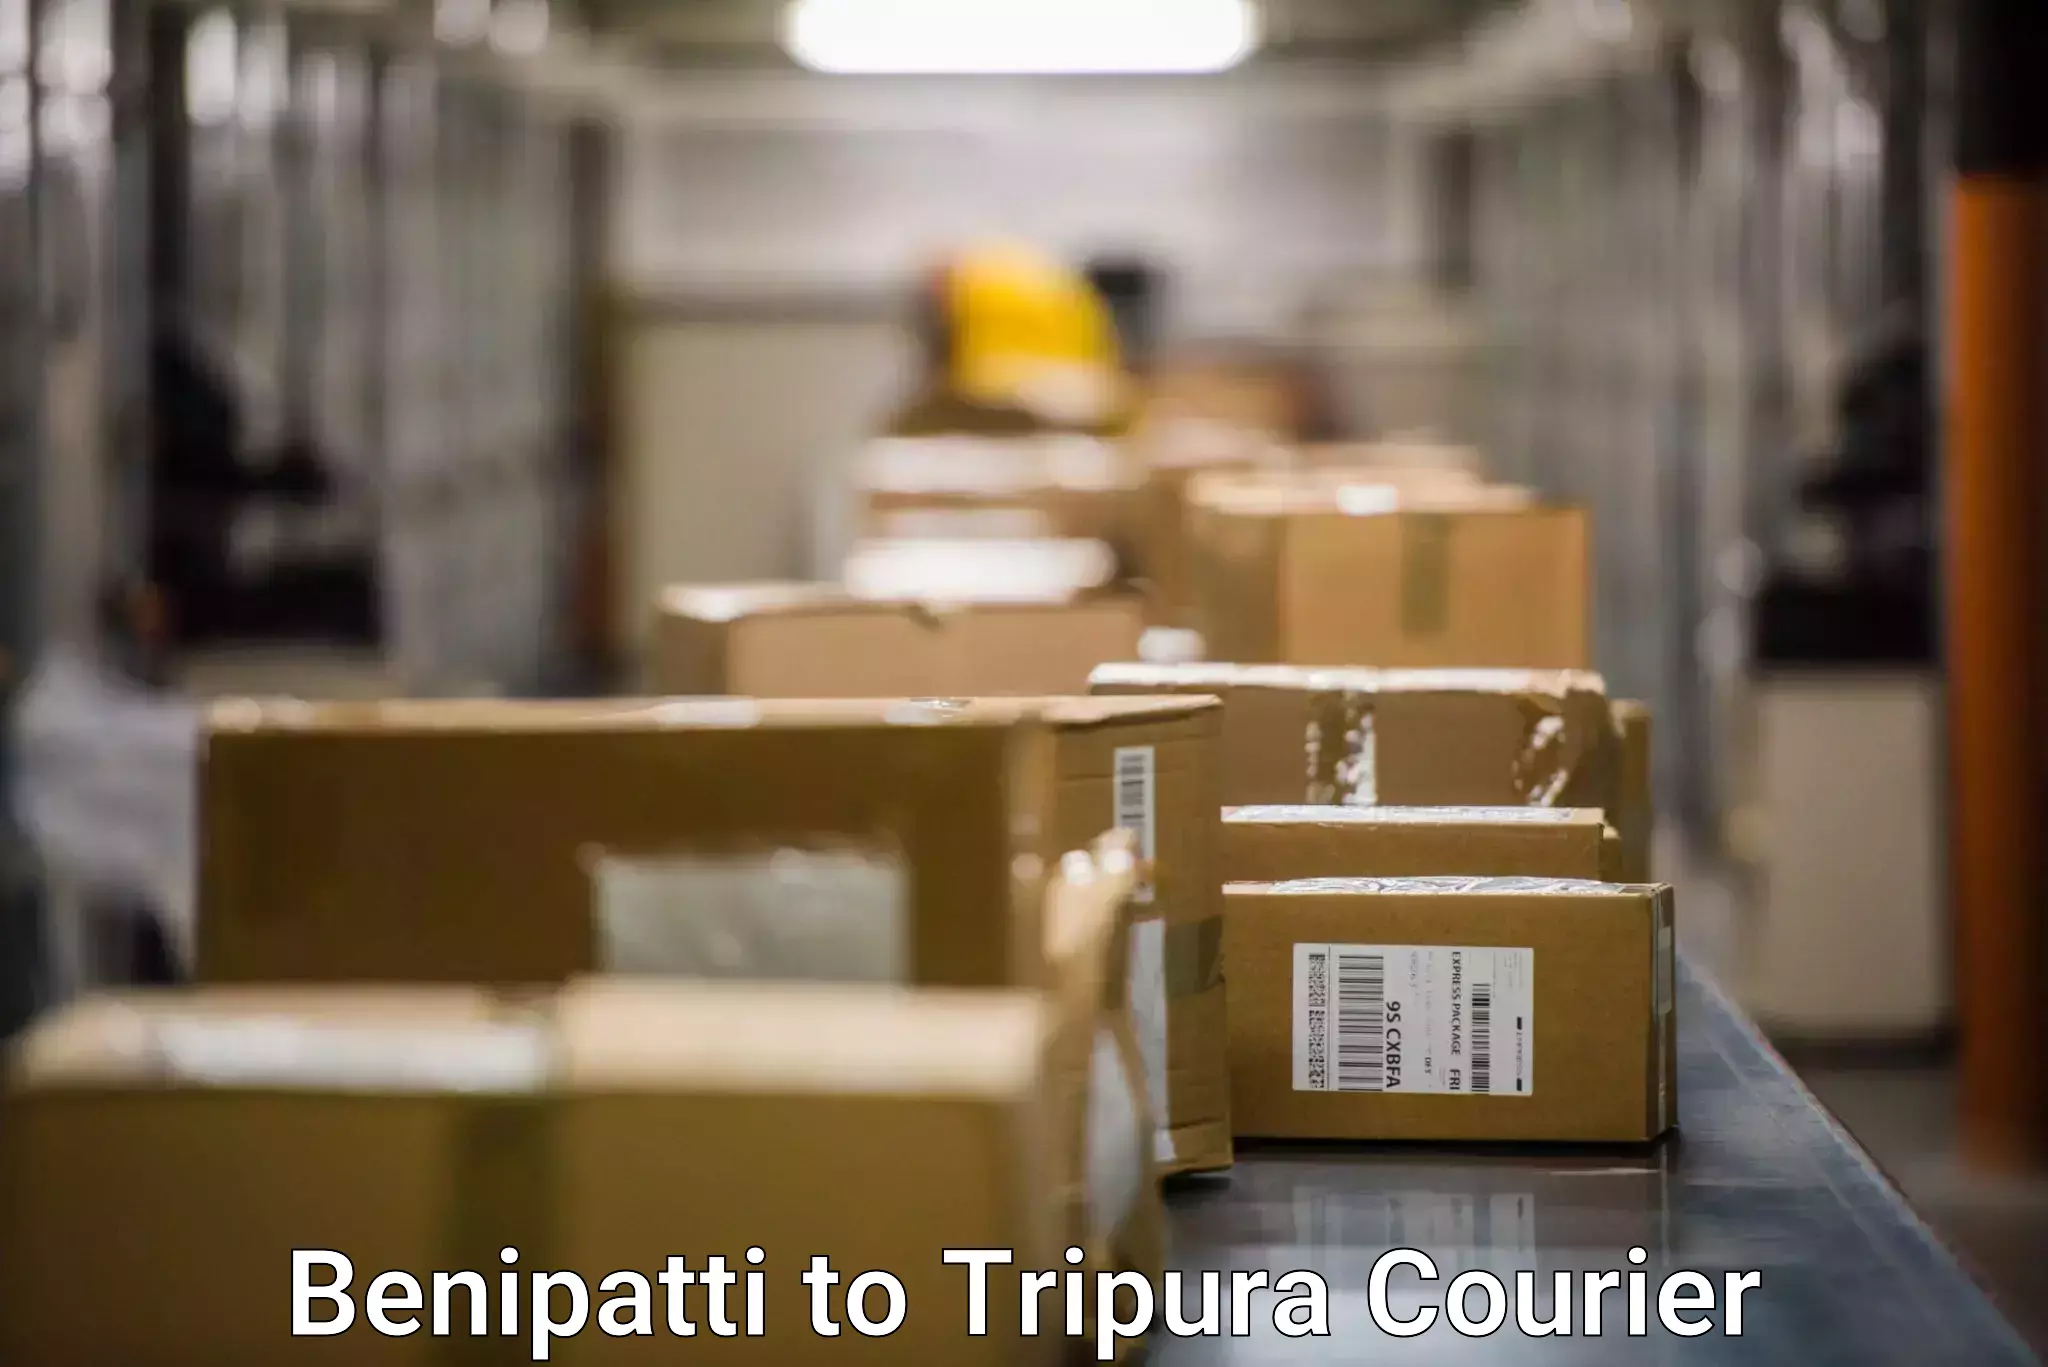 Door-to-door freight service Benipatti to Udaipur Tripura